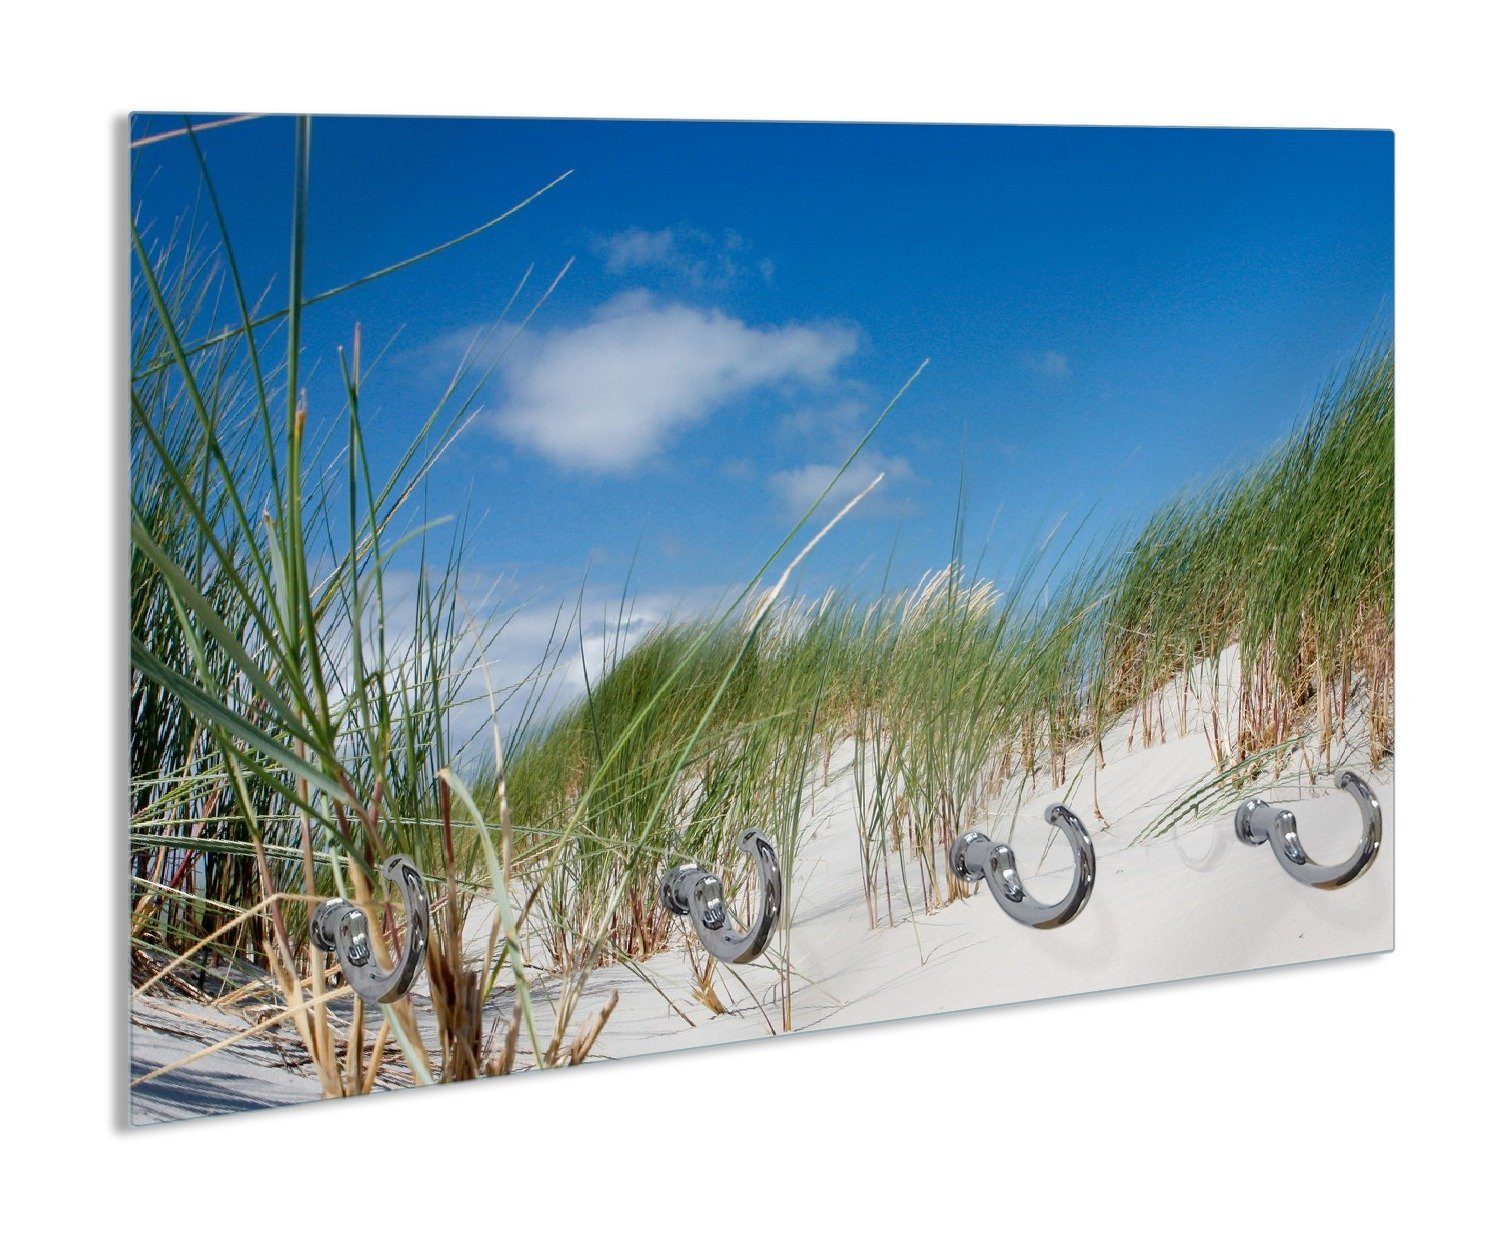 Wallario Полотенцесушители Düne am Strand unter blauem Himmel, aus Glas mit 4 Metallhaken